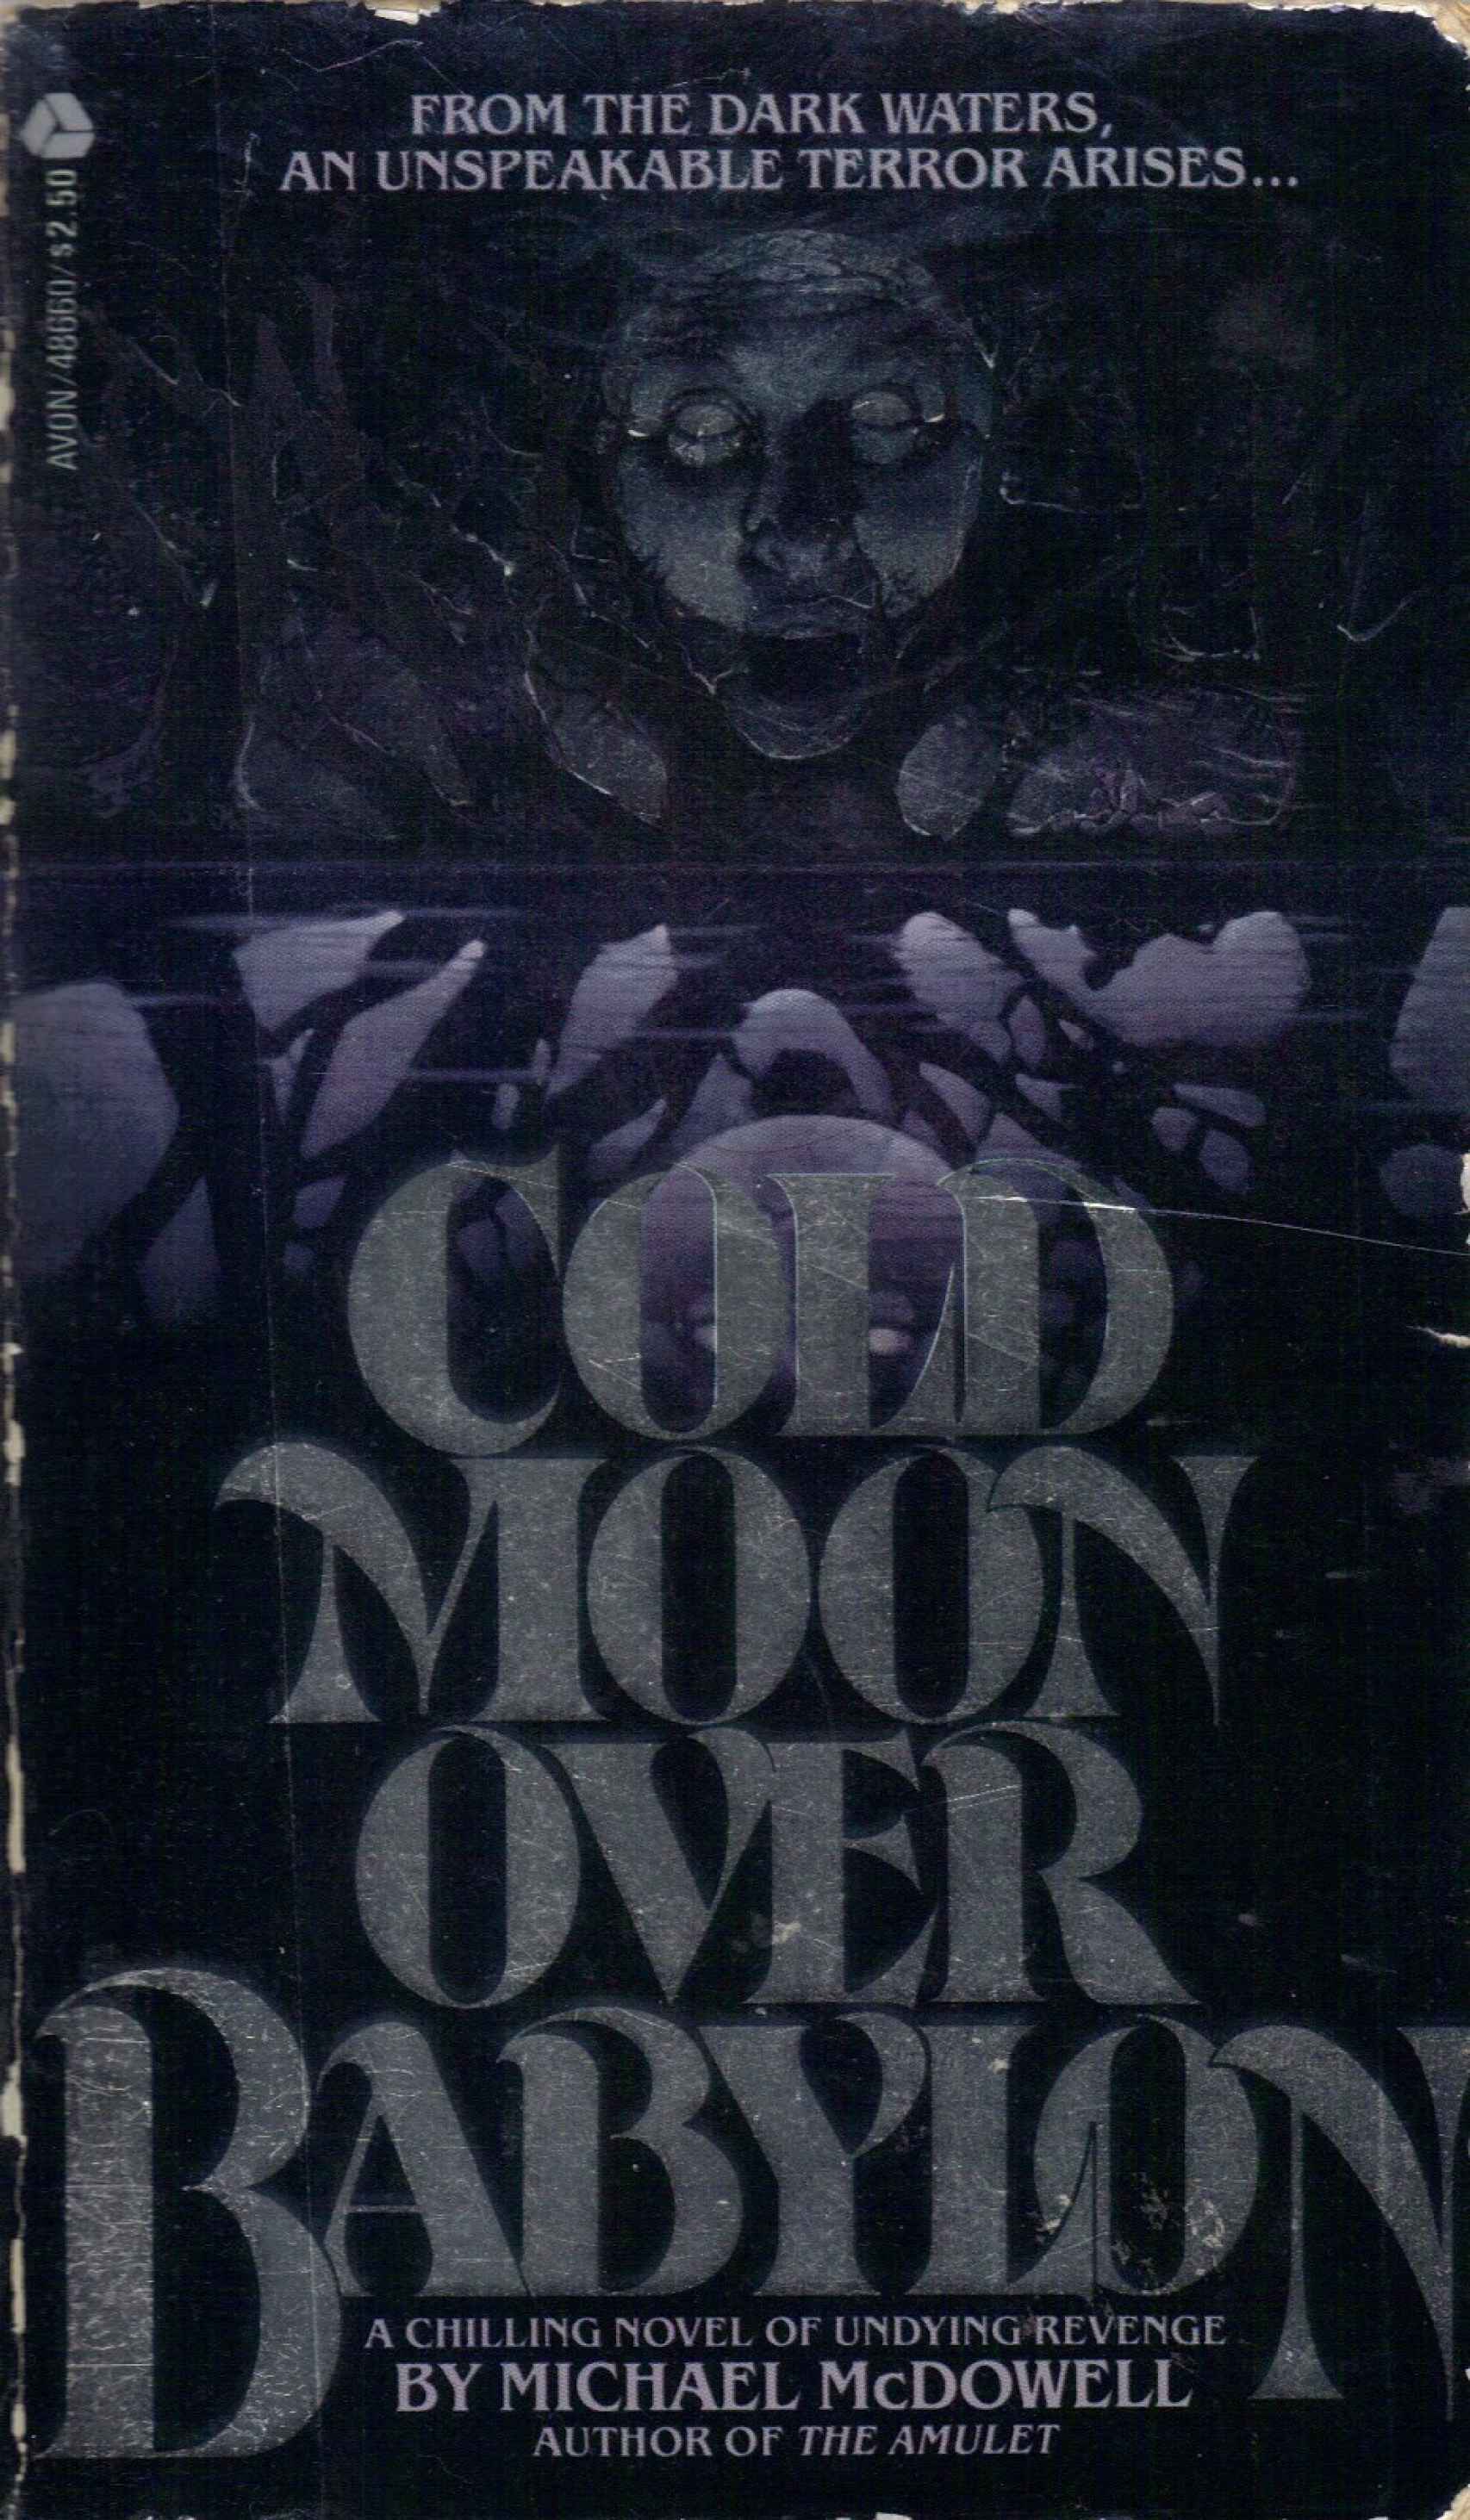 Portada de la edición original de 'Cold Moon Over Babylon' (1980), uno de los thrillers de gótico sureño de McDowell